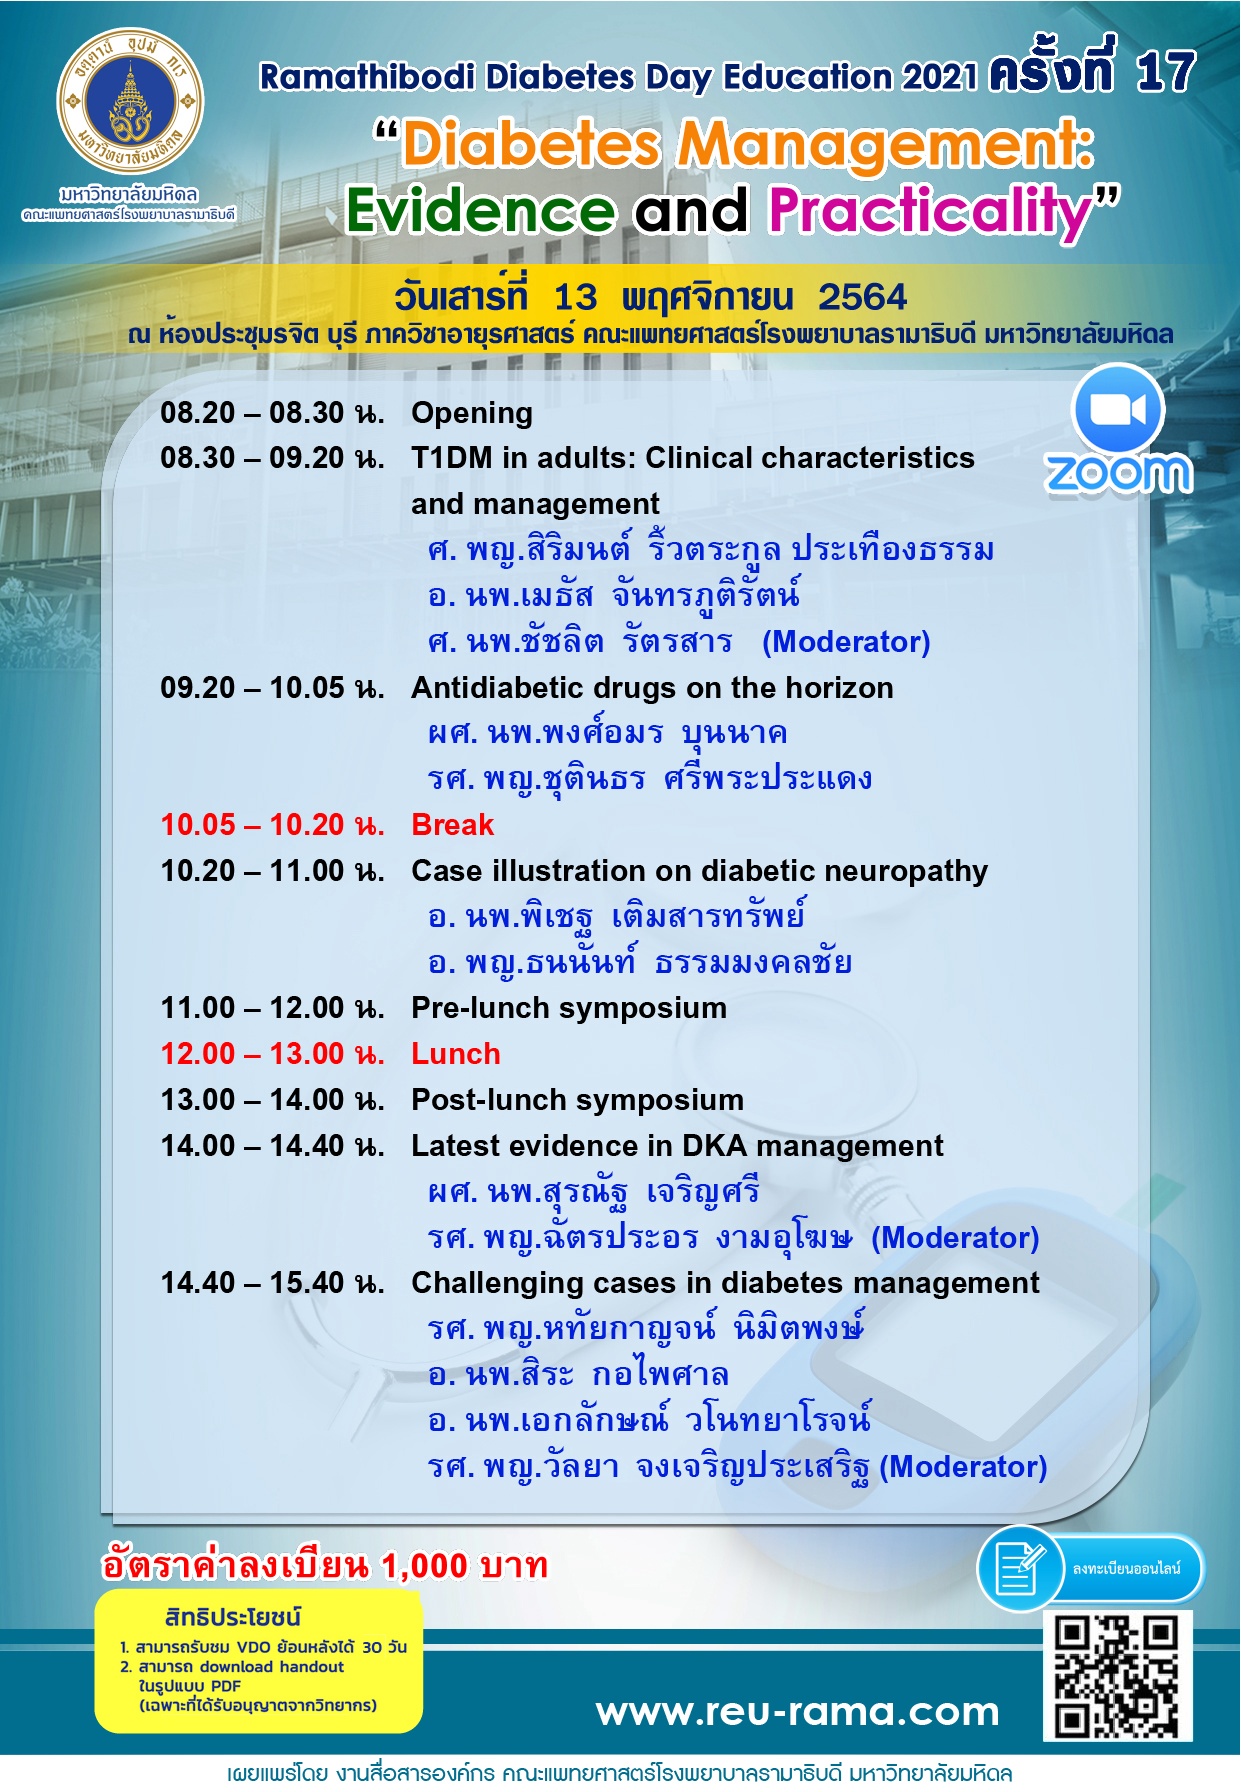 ประชุมวิชาการ Ramathibodi Diabetes Day Education 2021 ครั้งที่ 17